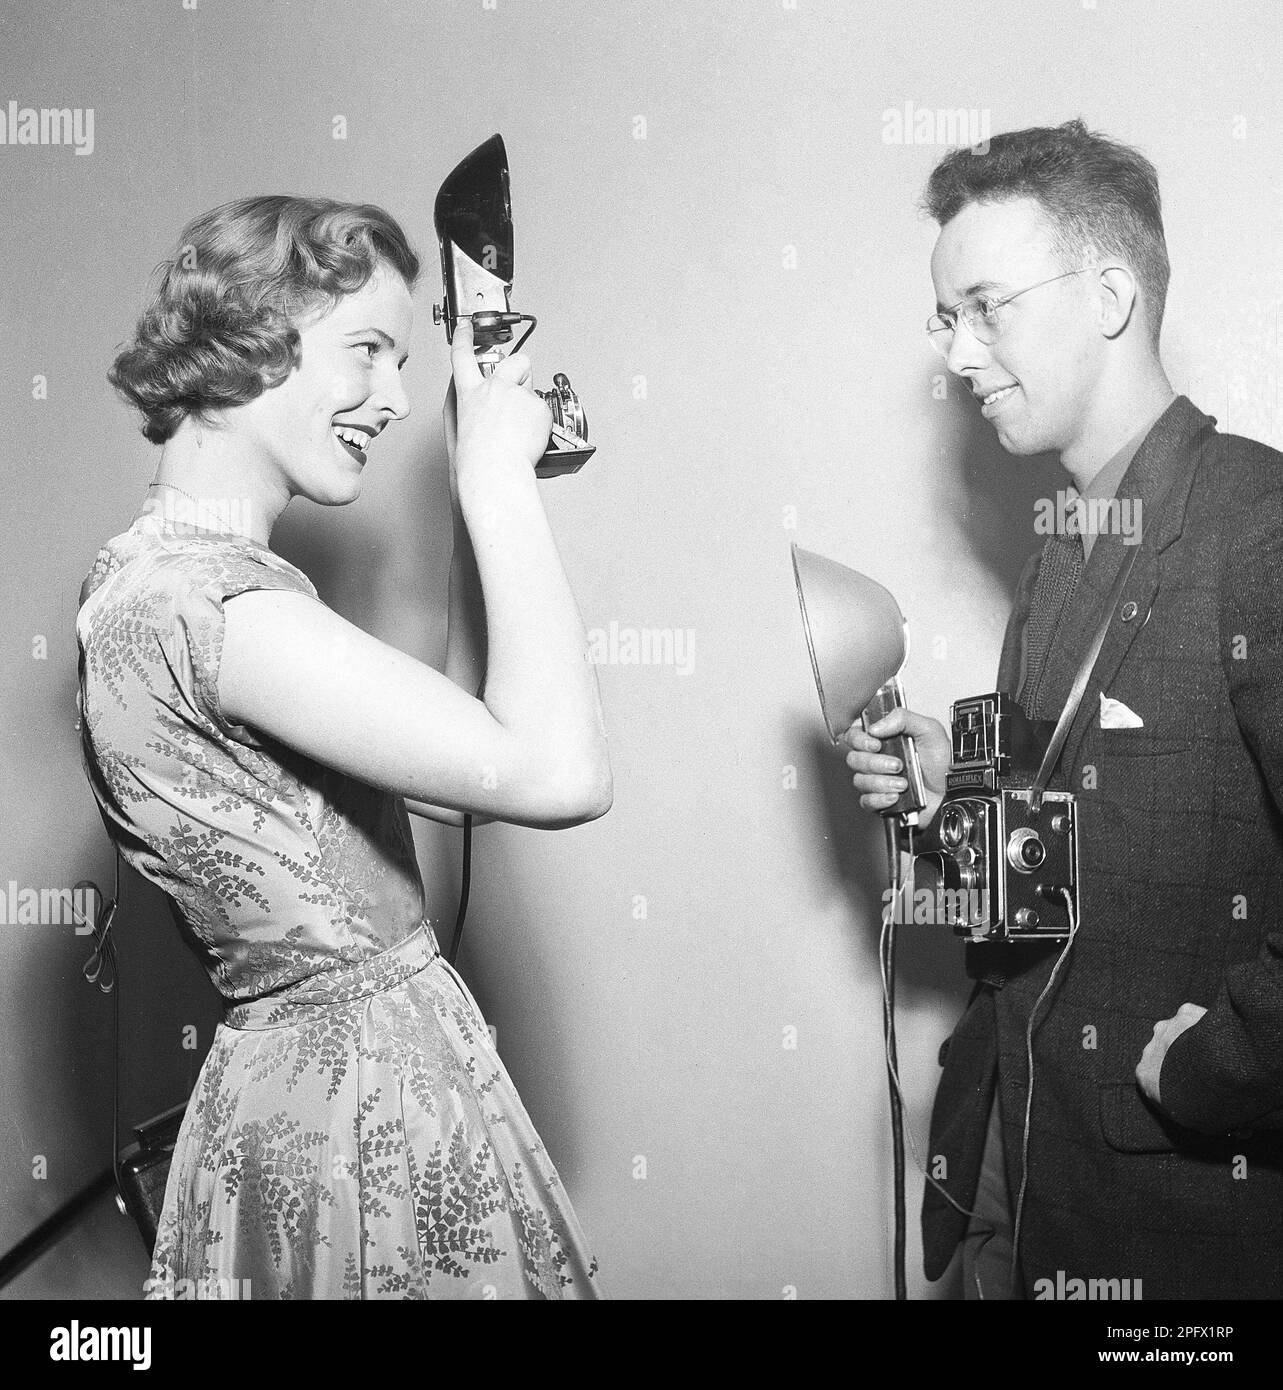 Fotografen in den 1950er. Eine junge Frau fotografiert einen anderen Fotografen. Seine Kamera ist ein Rolleiflex von der deutschen Firma Rollei für 60-mm-Filme. Schweden 1956. Foto Kristoffersson Ref. BX37-10 Stockfoto